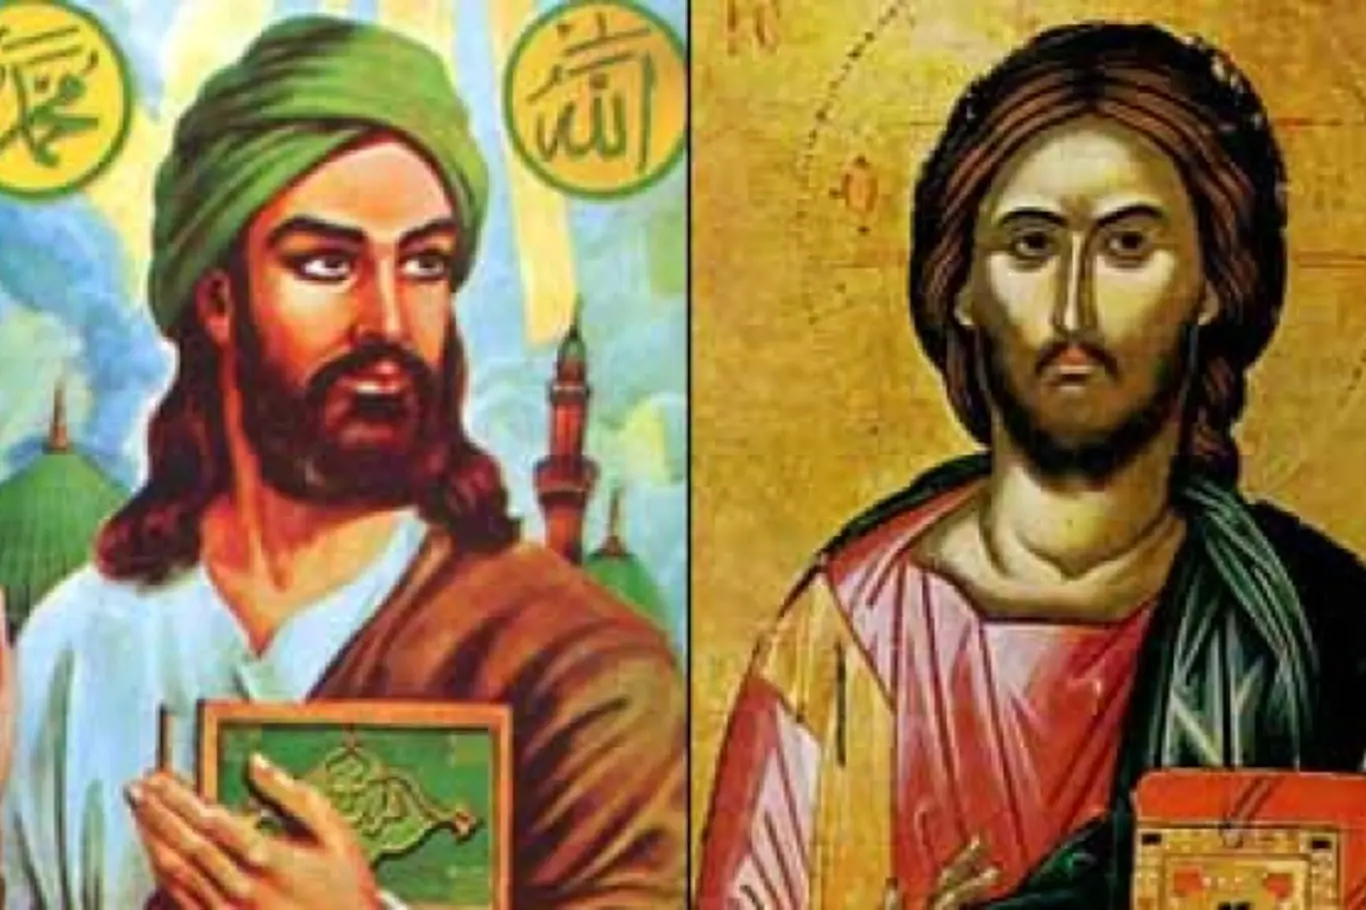 Ježíš: pro muslimy velký prorok, pro židy podvodník. Buddhistům je to jedno